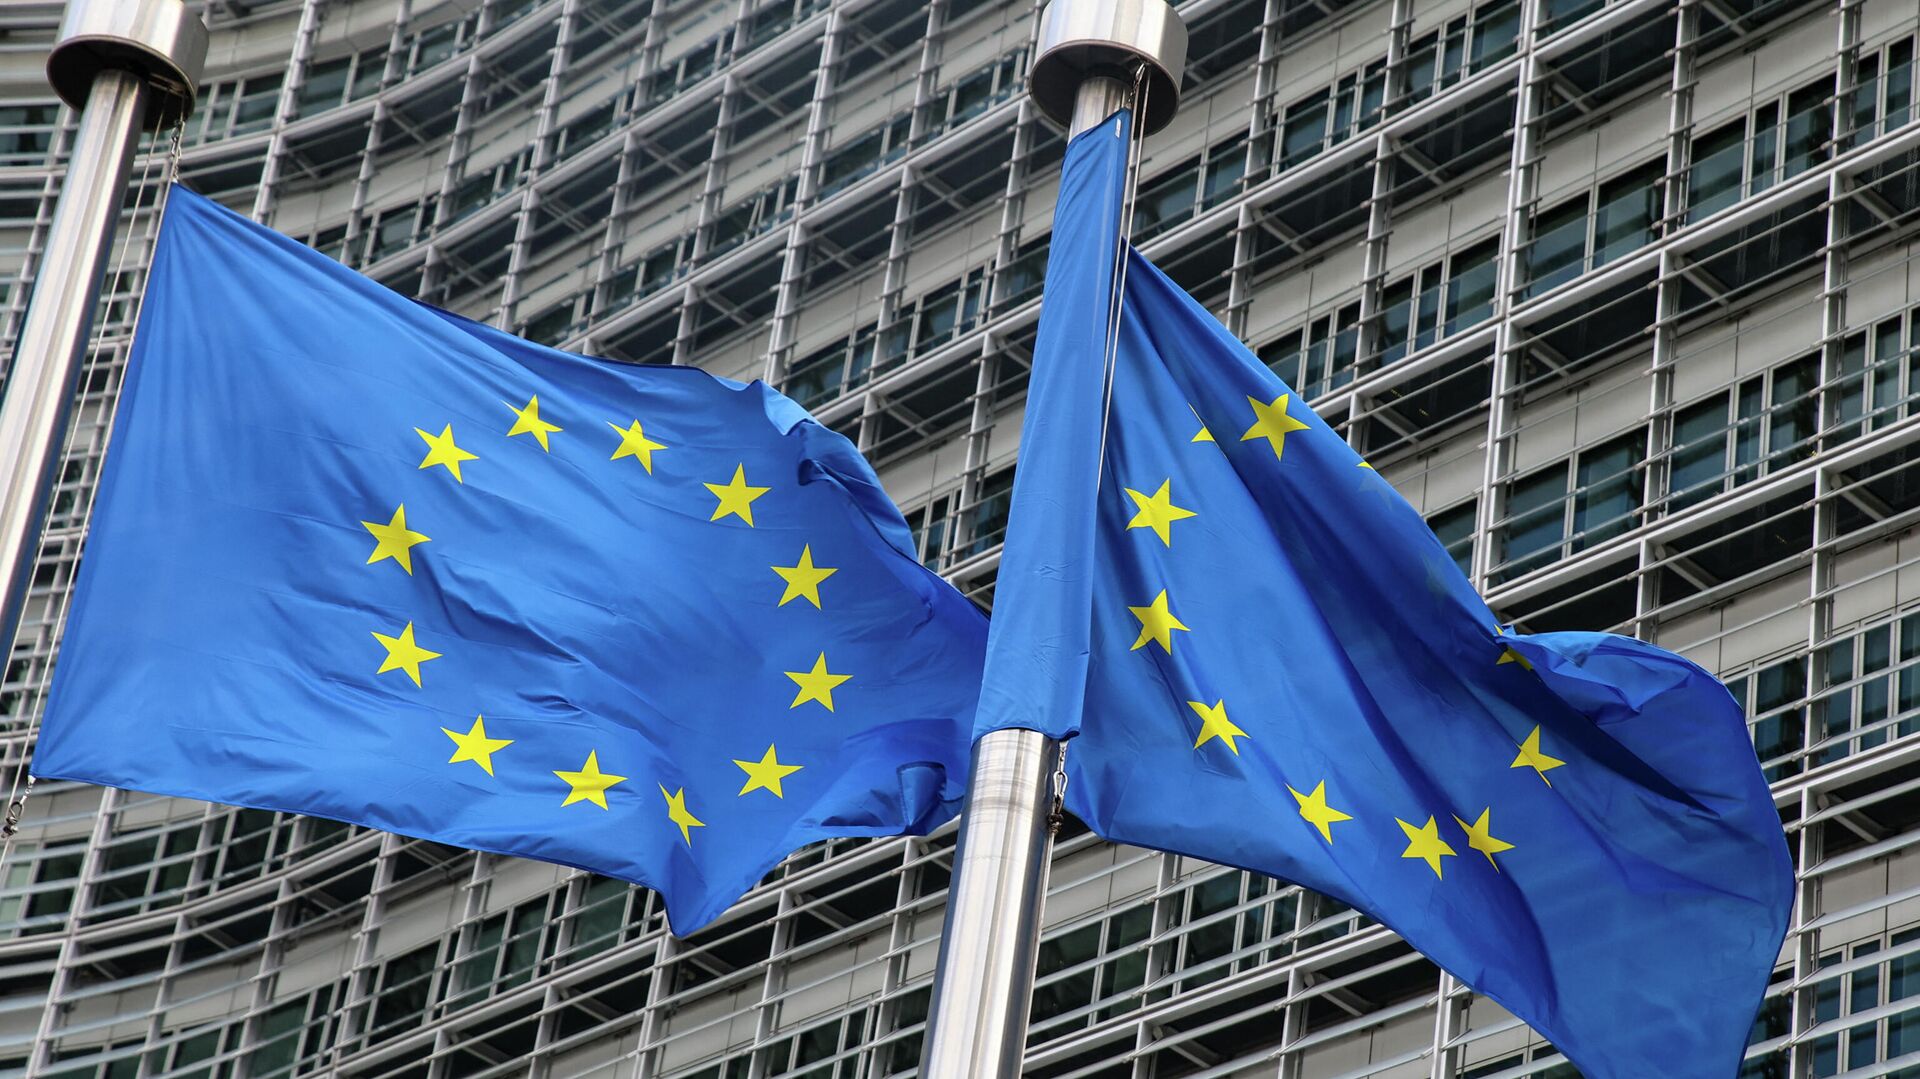 Флаги Европейского союза у штаб-квартиры Европейской комиссии в Брюсселе - Sputnik Latvija, 1920, 28.12.2021